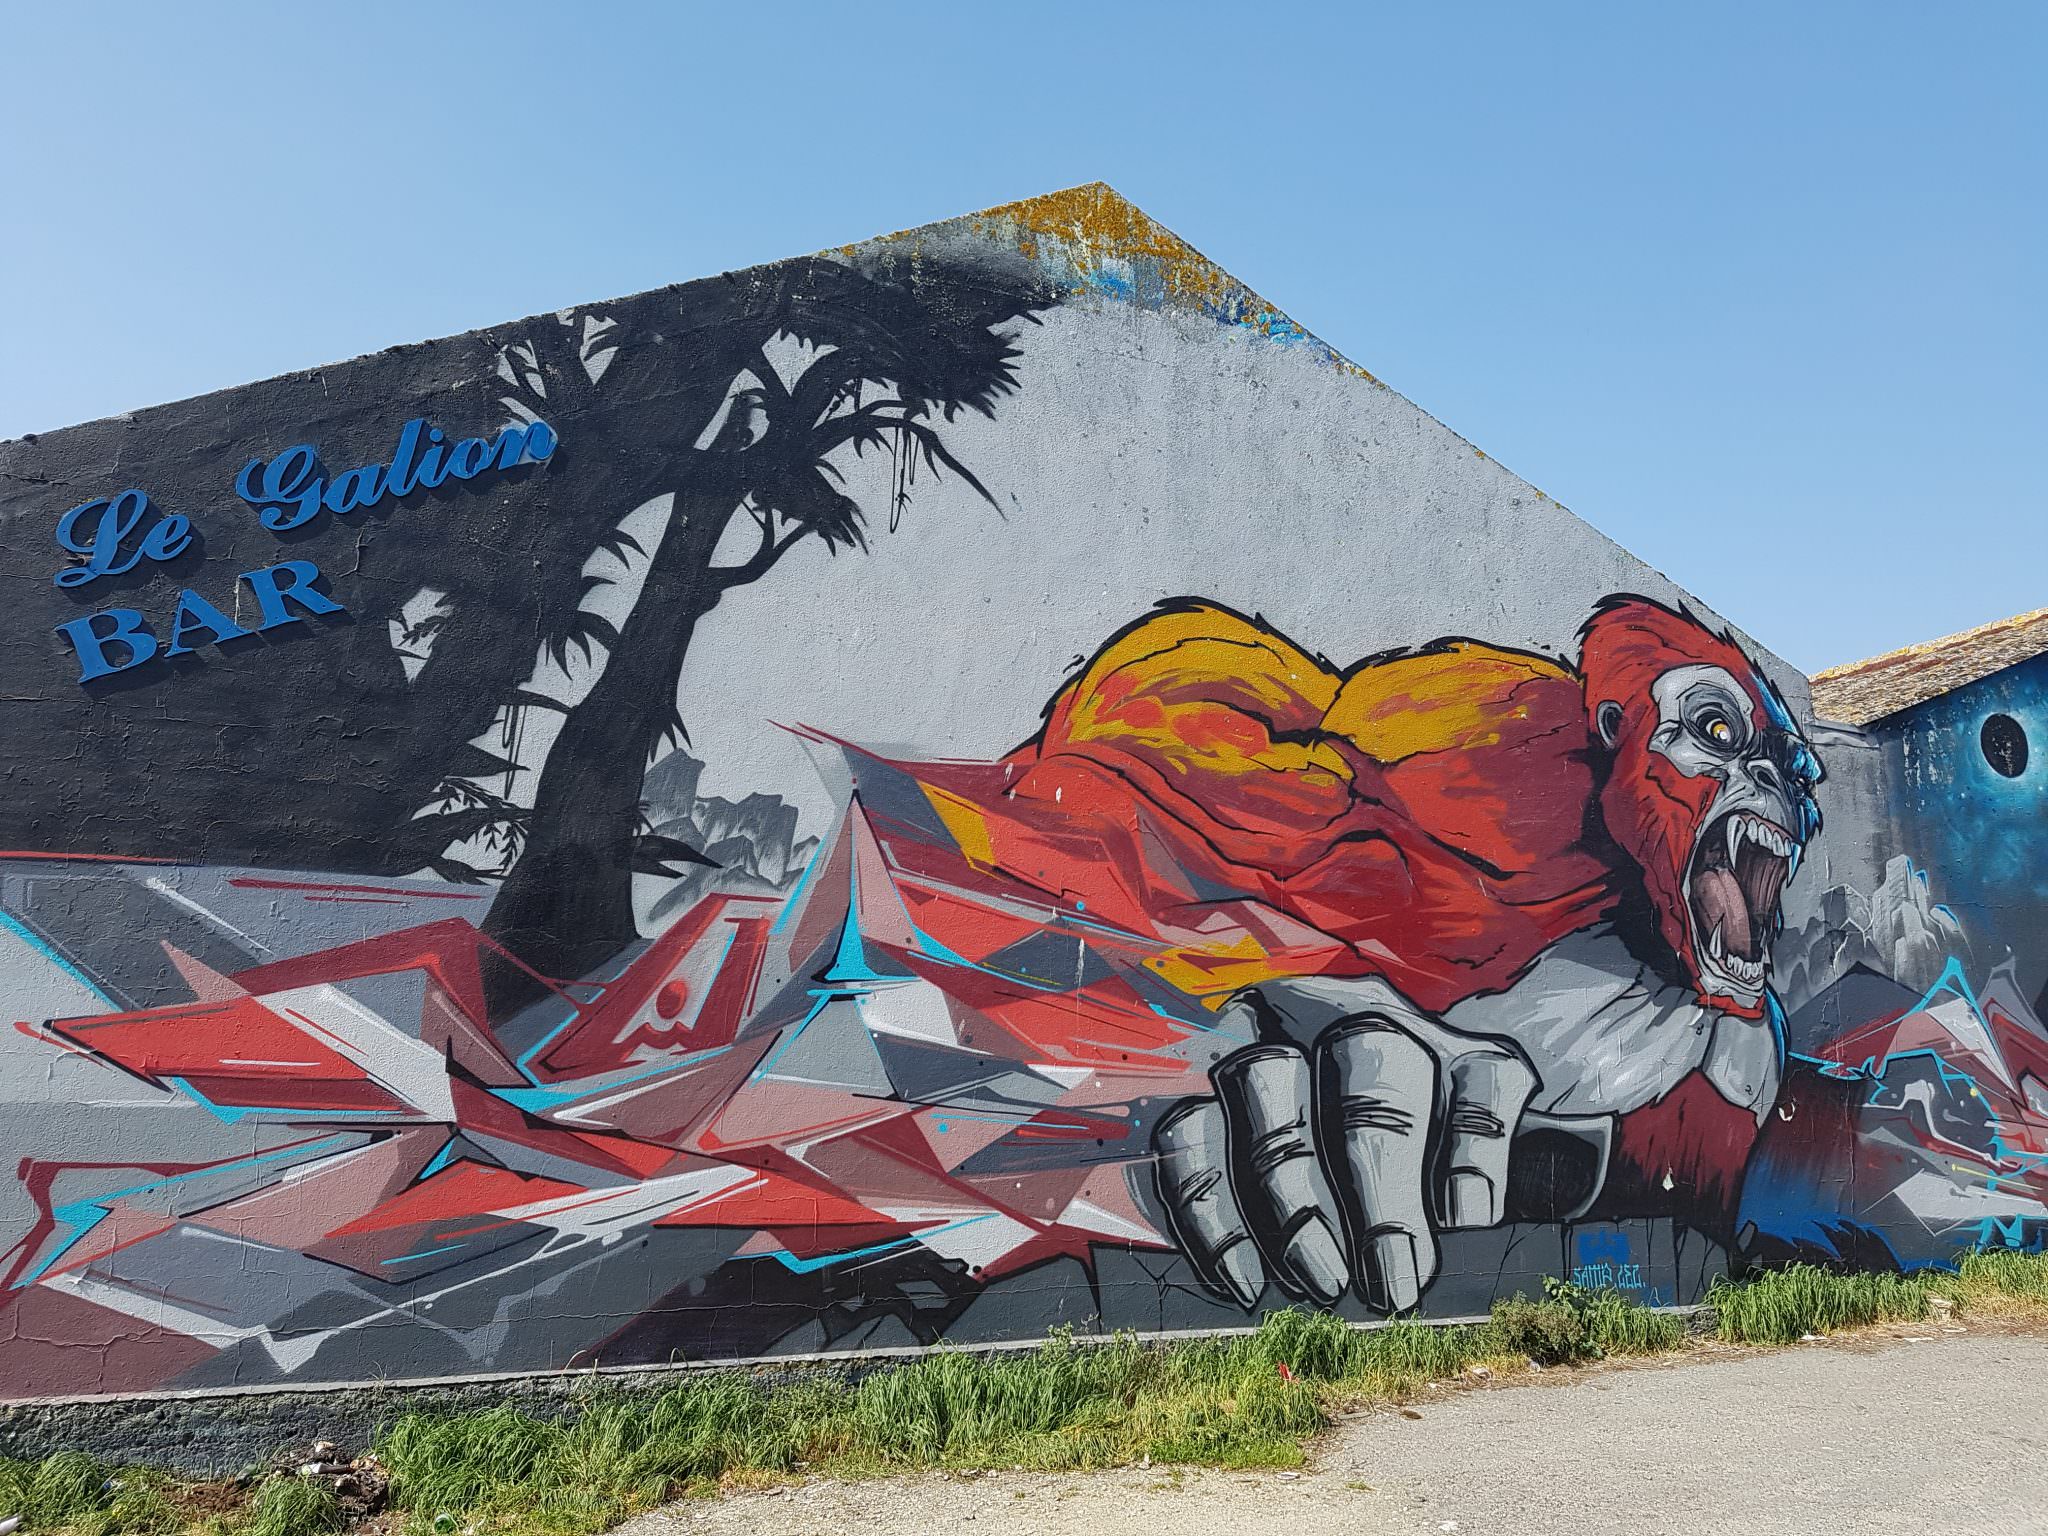 Graff d'un gorille par LEZ et SAMP au Galion à Lorient